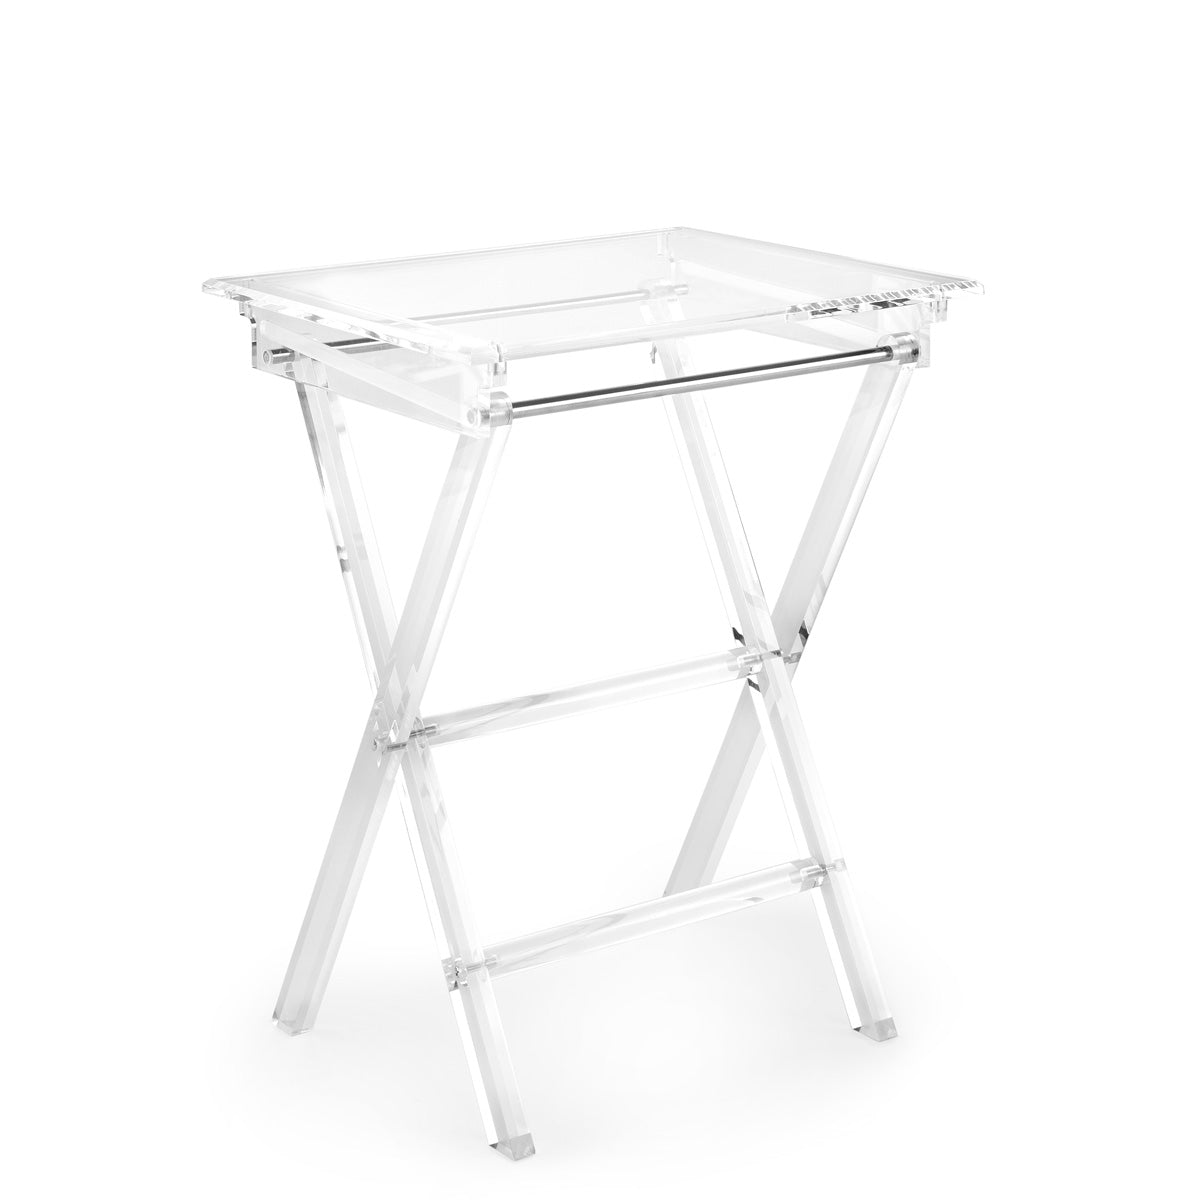 Clarté Acrylic Folding Table